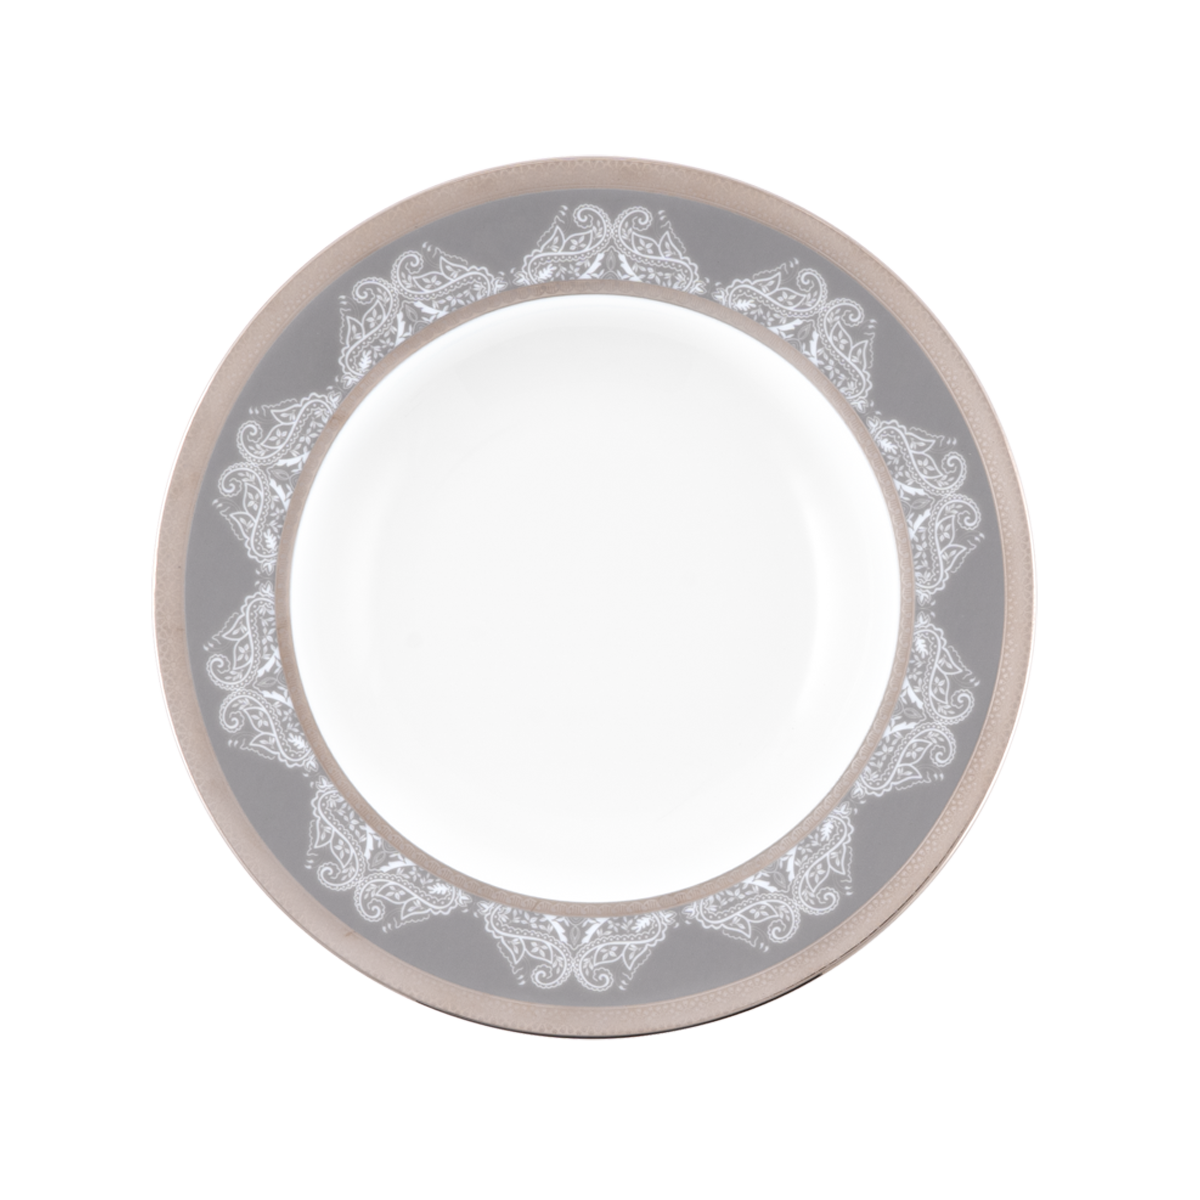 Set of 2 Rim Soup Plate - Romane Grey